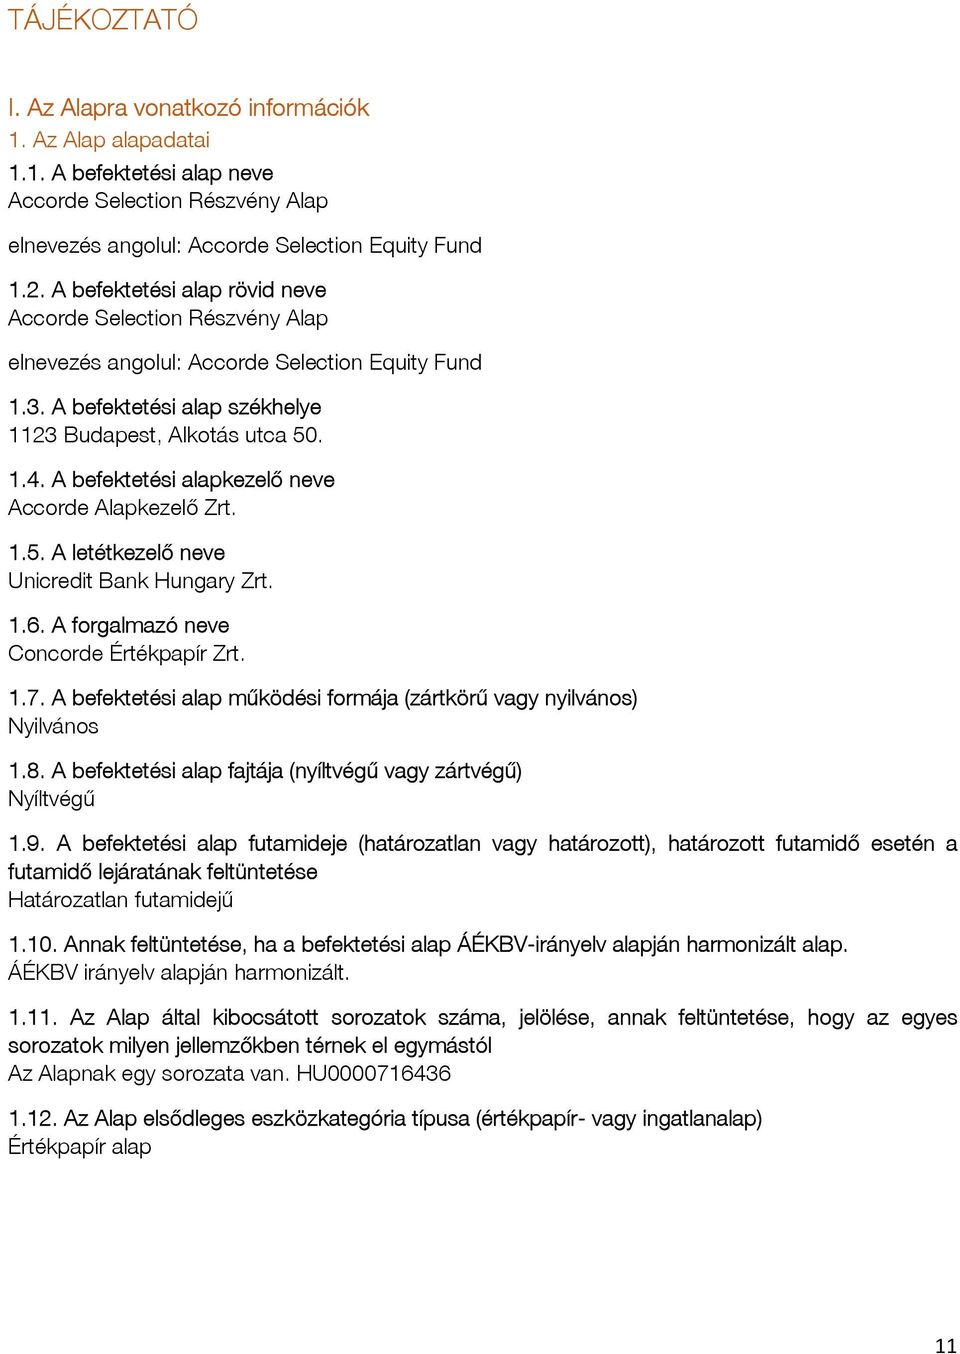 A befektetési alapkezelő neve Accorde Alapkezelő Zrt. 1.5. A letétkezelő neve Unicredit Bank Hungary Zrt. 1.6. A forgalmazó neve Concorde Értékpapír Zrt. 1.7.